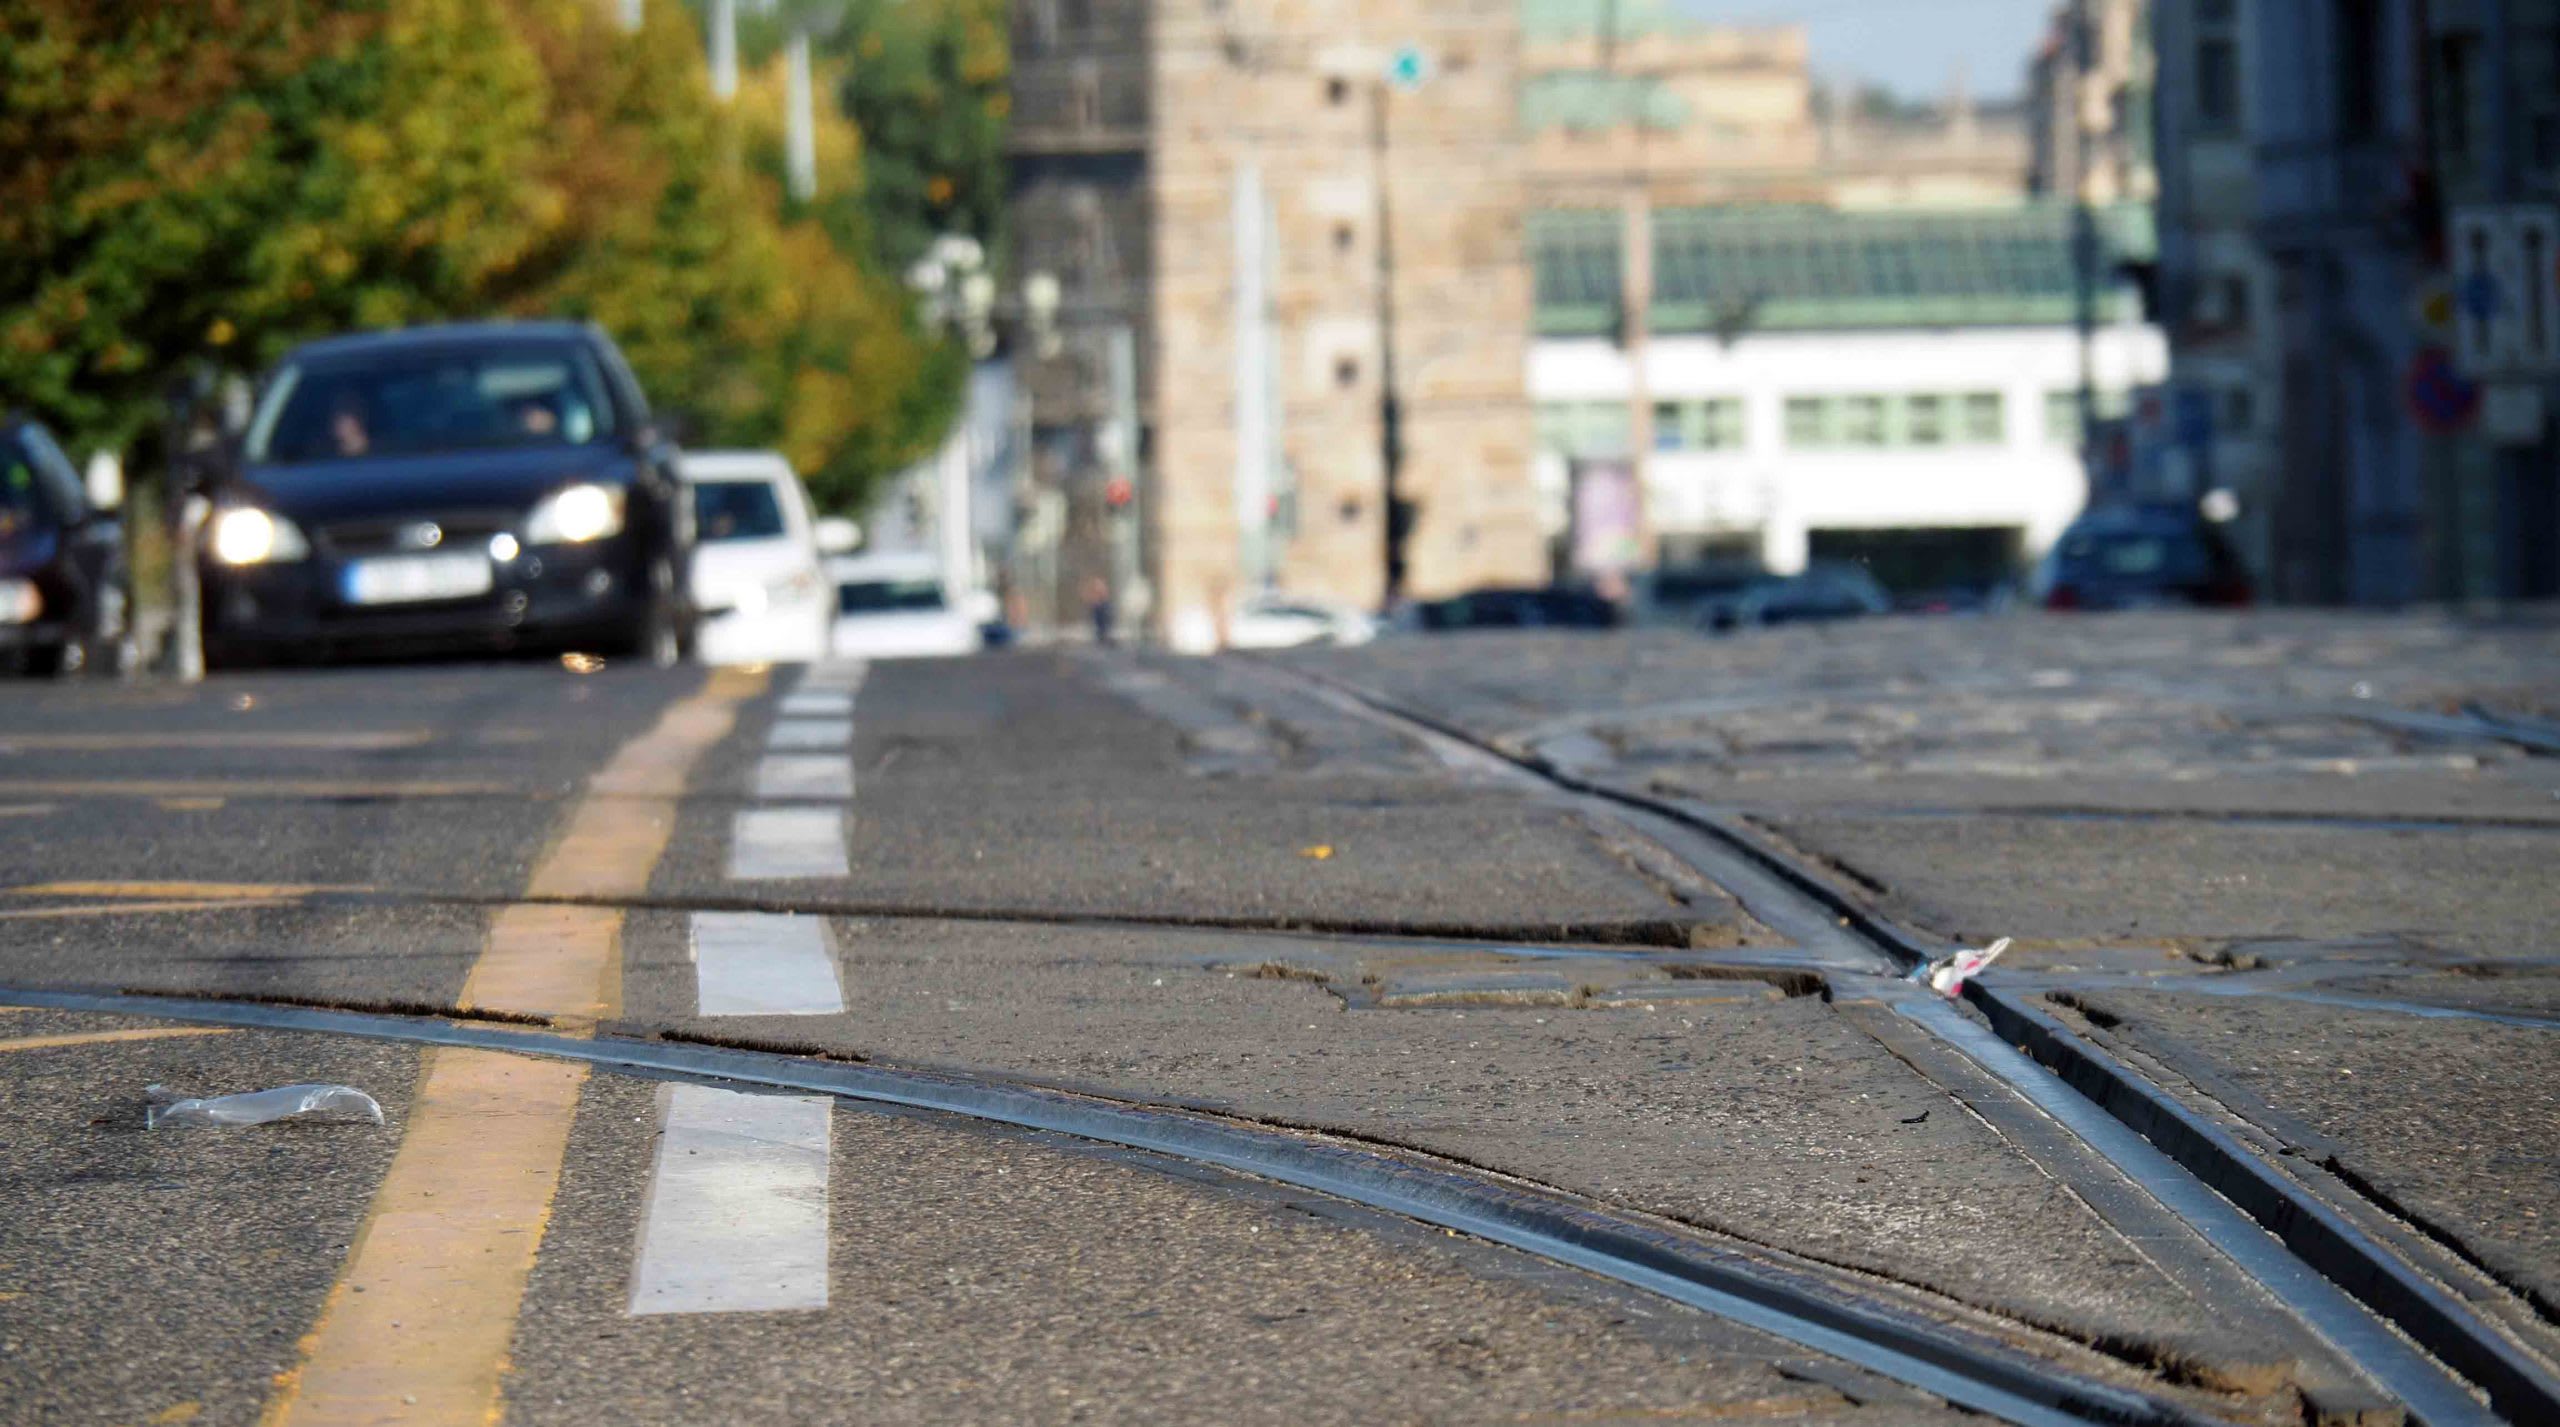 Хотя качество дорог в стране, по мнению чехов, и оставляет желать лучшего, городской транспорт Праги функционирует отлично. Источник: Shutterstock